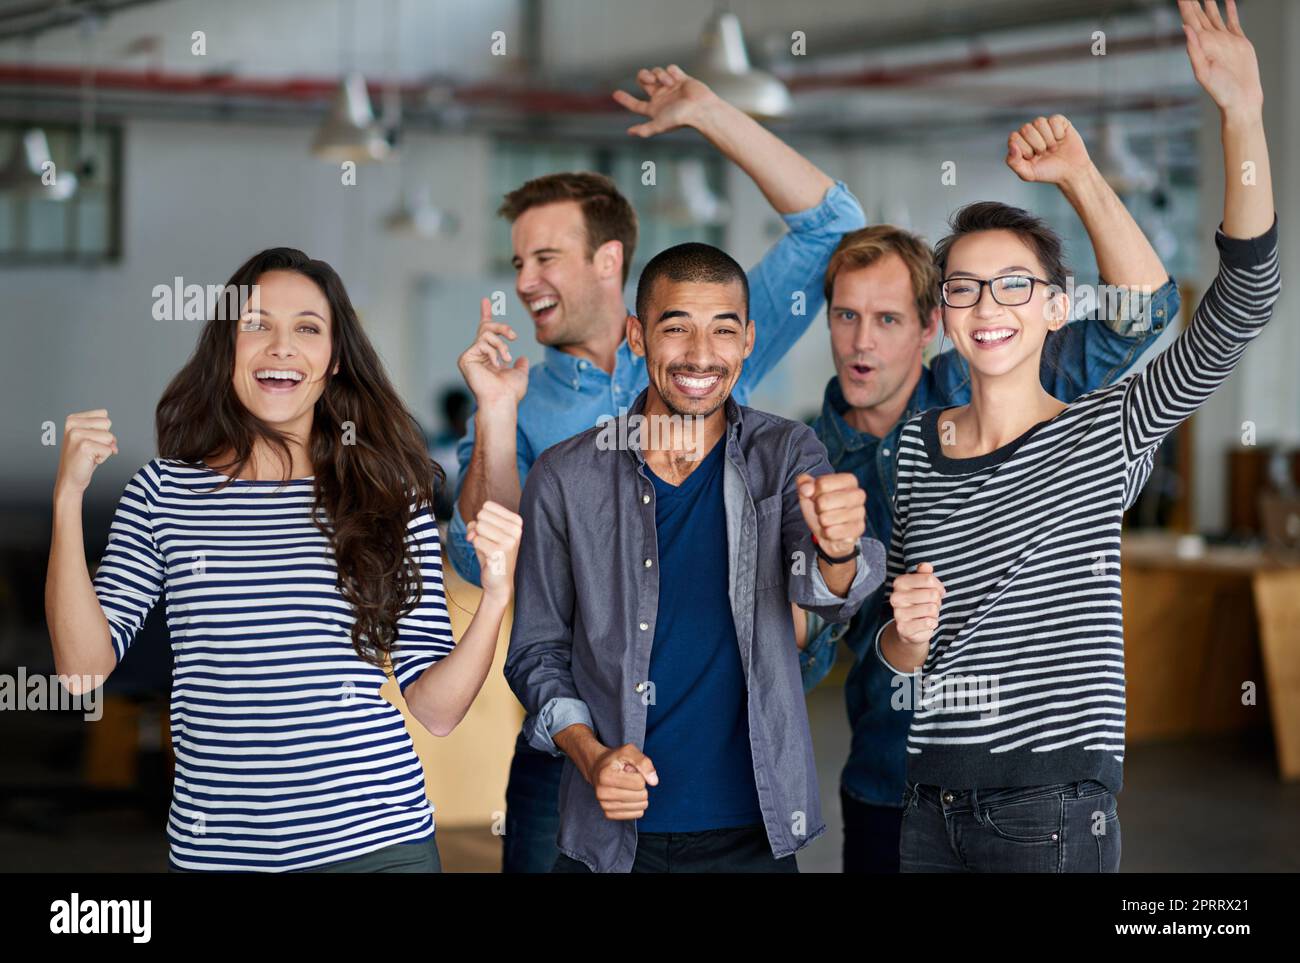 Weiter so, Team. Glückliche Gruppe von Büromitarbeitern, die gemeinsam feiern. Stockfoto